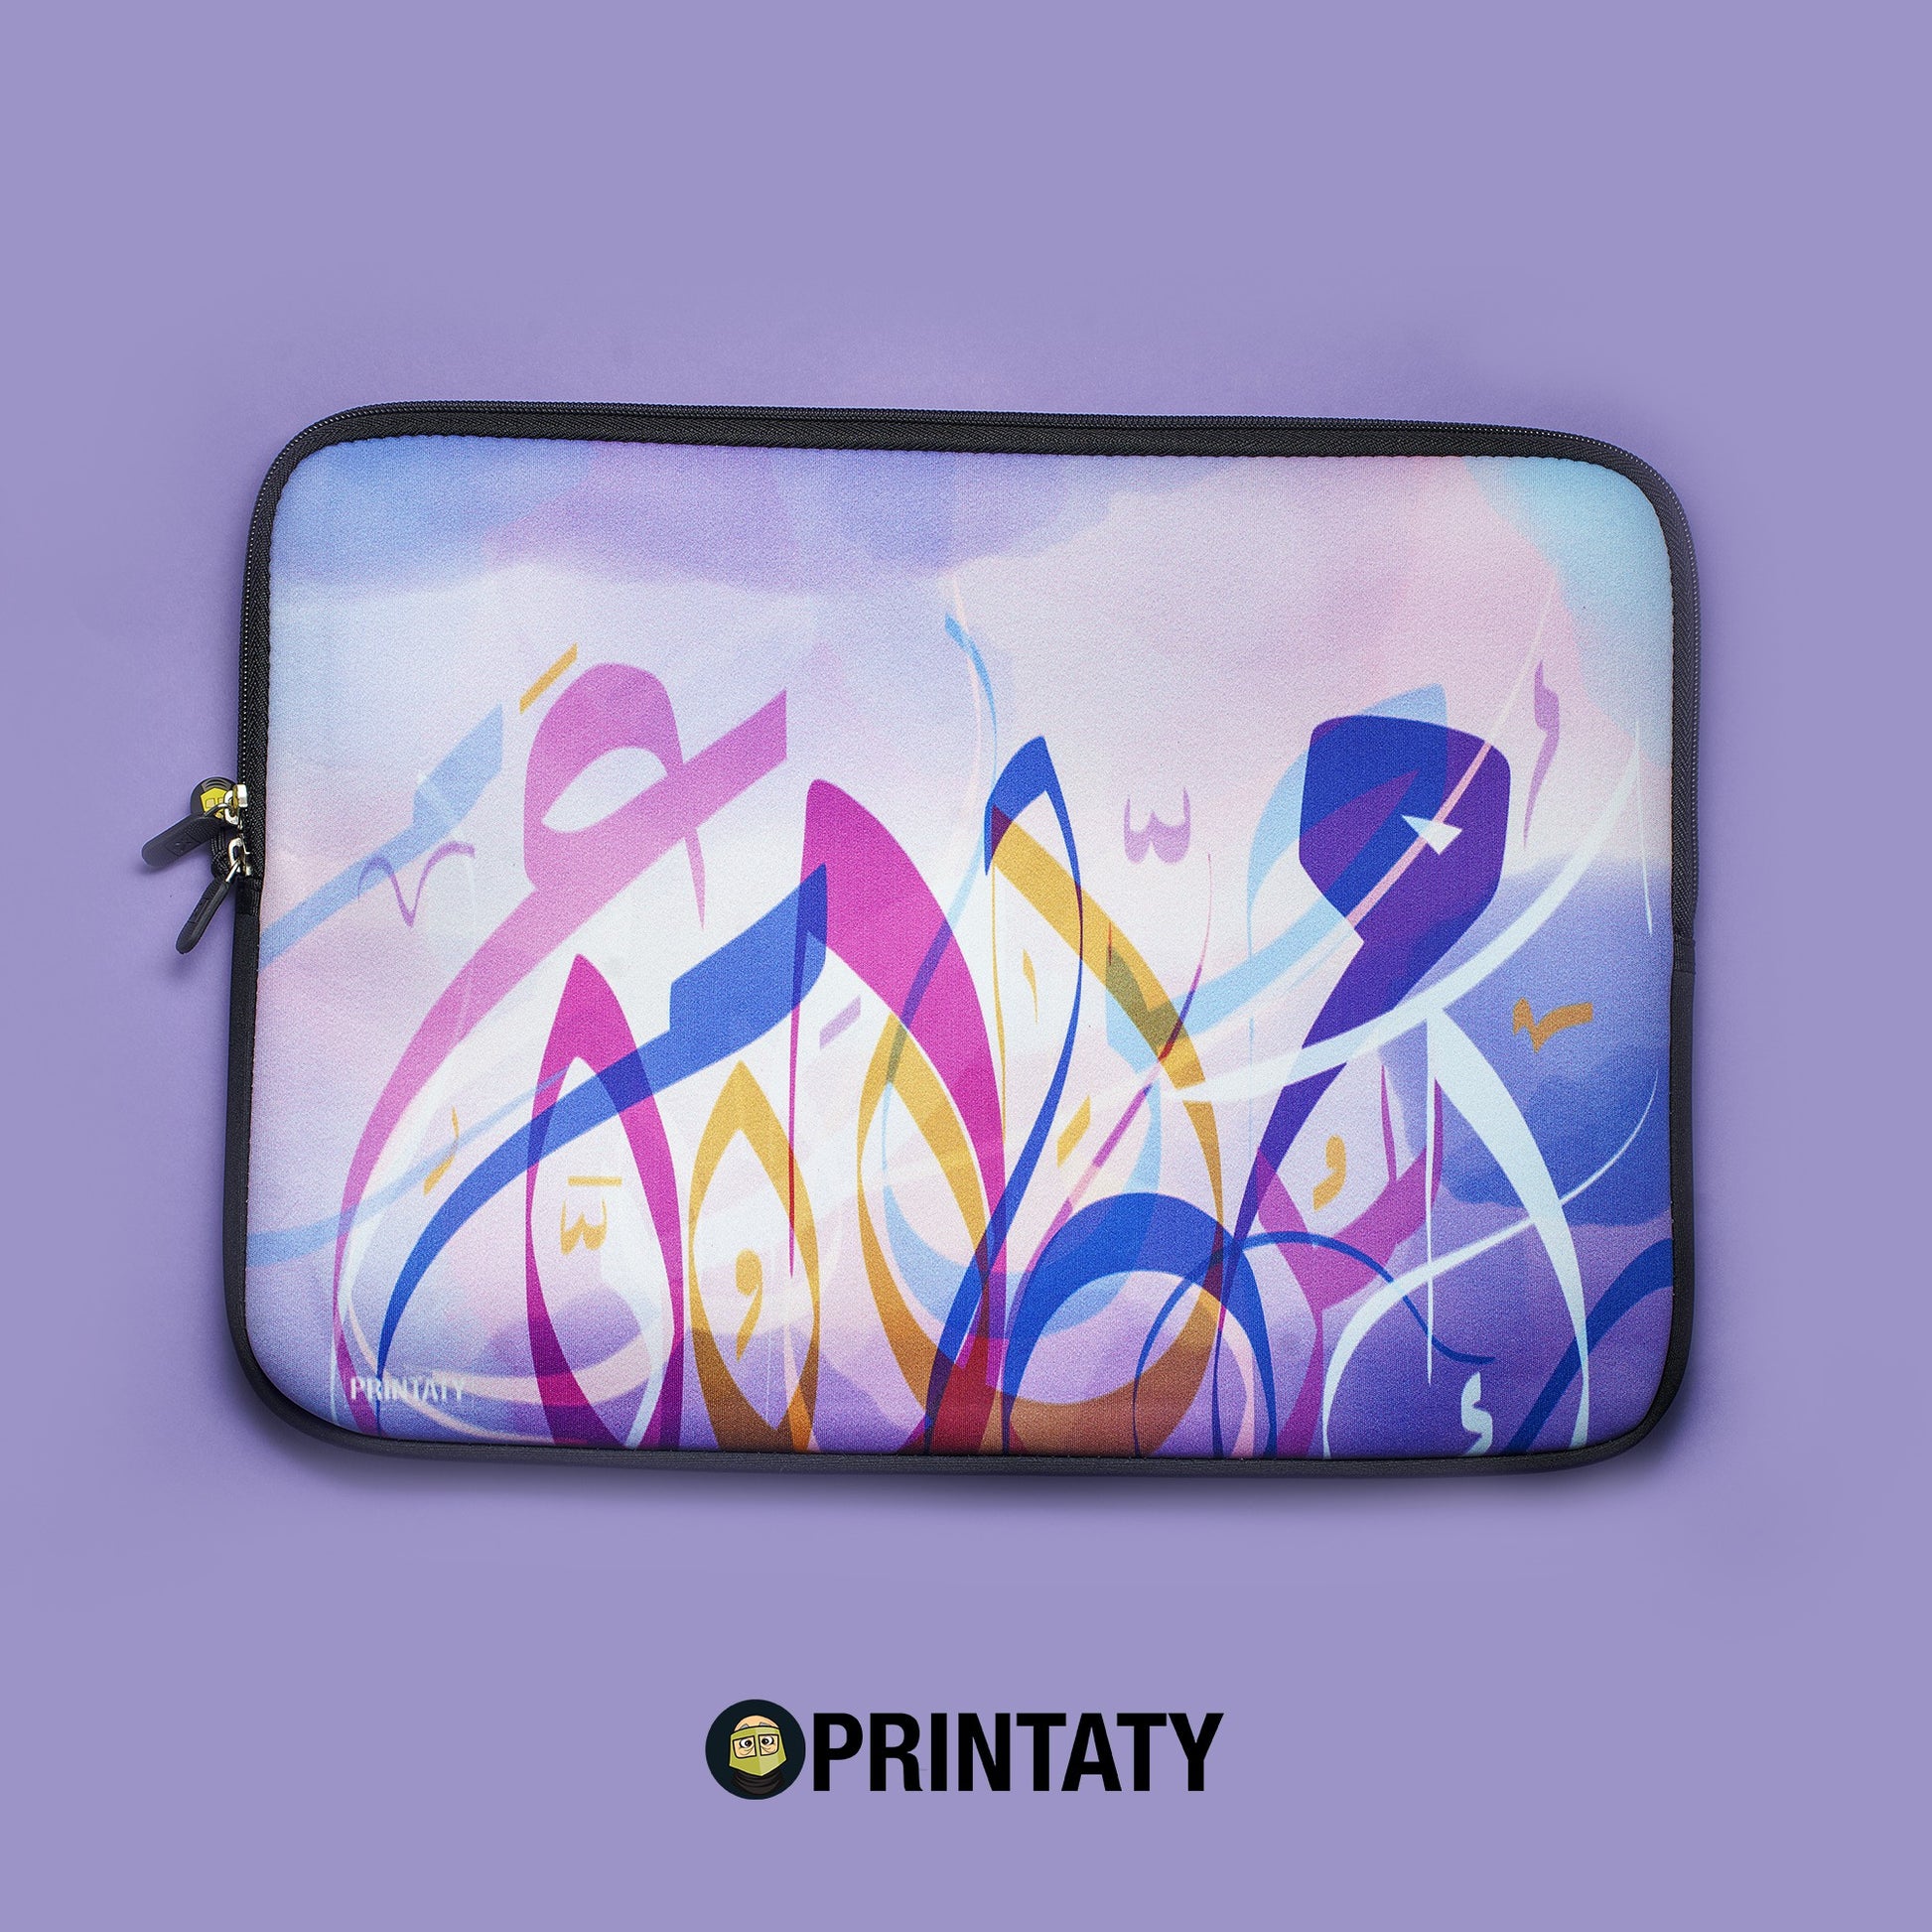 ملف لابتوب  : أحرف عربية بالألوان المائية - برنتاتي Printaty